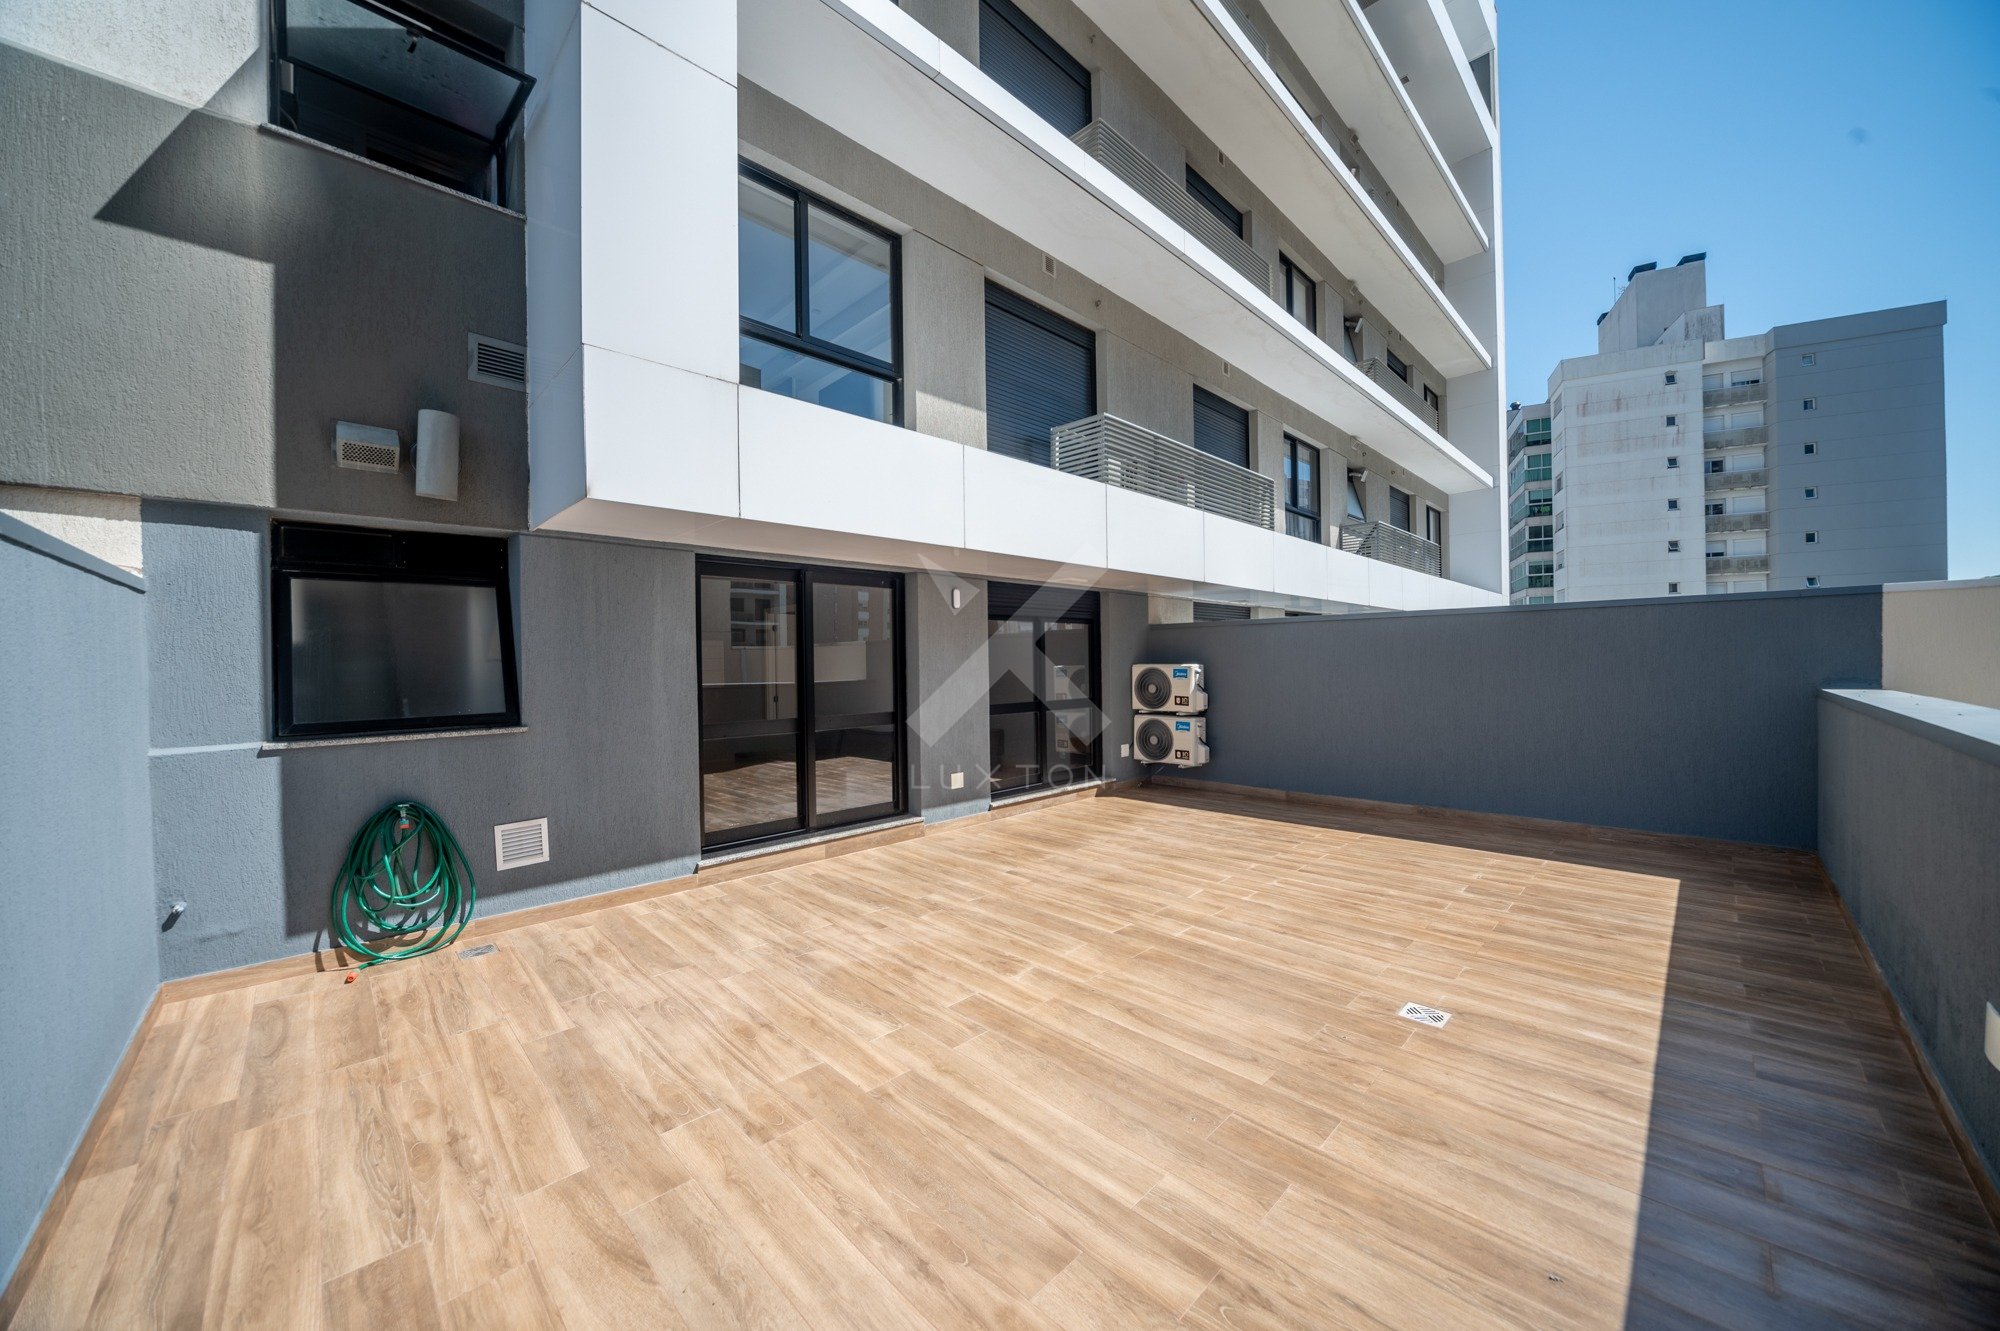 Apartamento Garden com 88m², 1 dormitório, 1 suíte, 2 vagas, no bairro Central Parque em Porto Alegre para Comprar